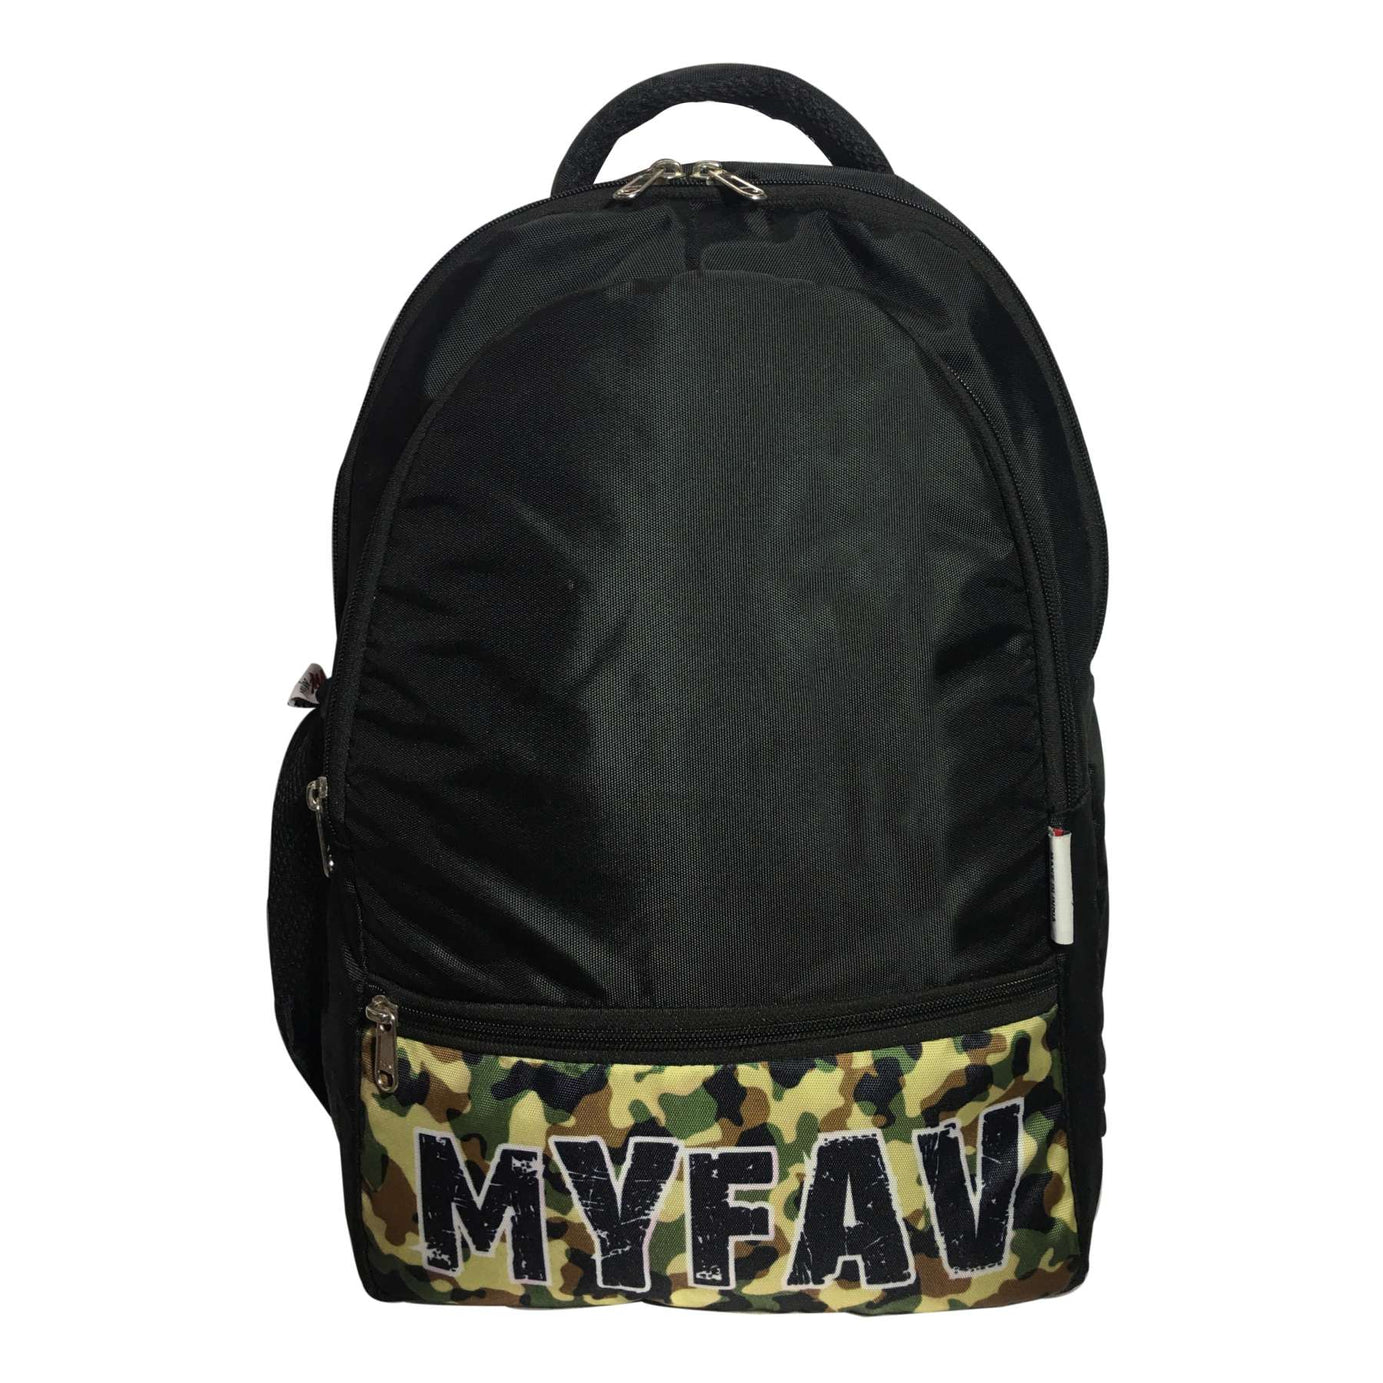 Camouflage Print Black Laptop Backpack For Men Women / School Backpack for Boys & Girls